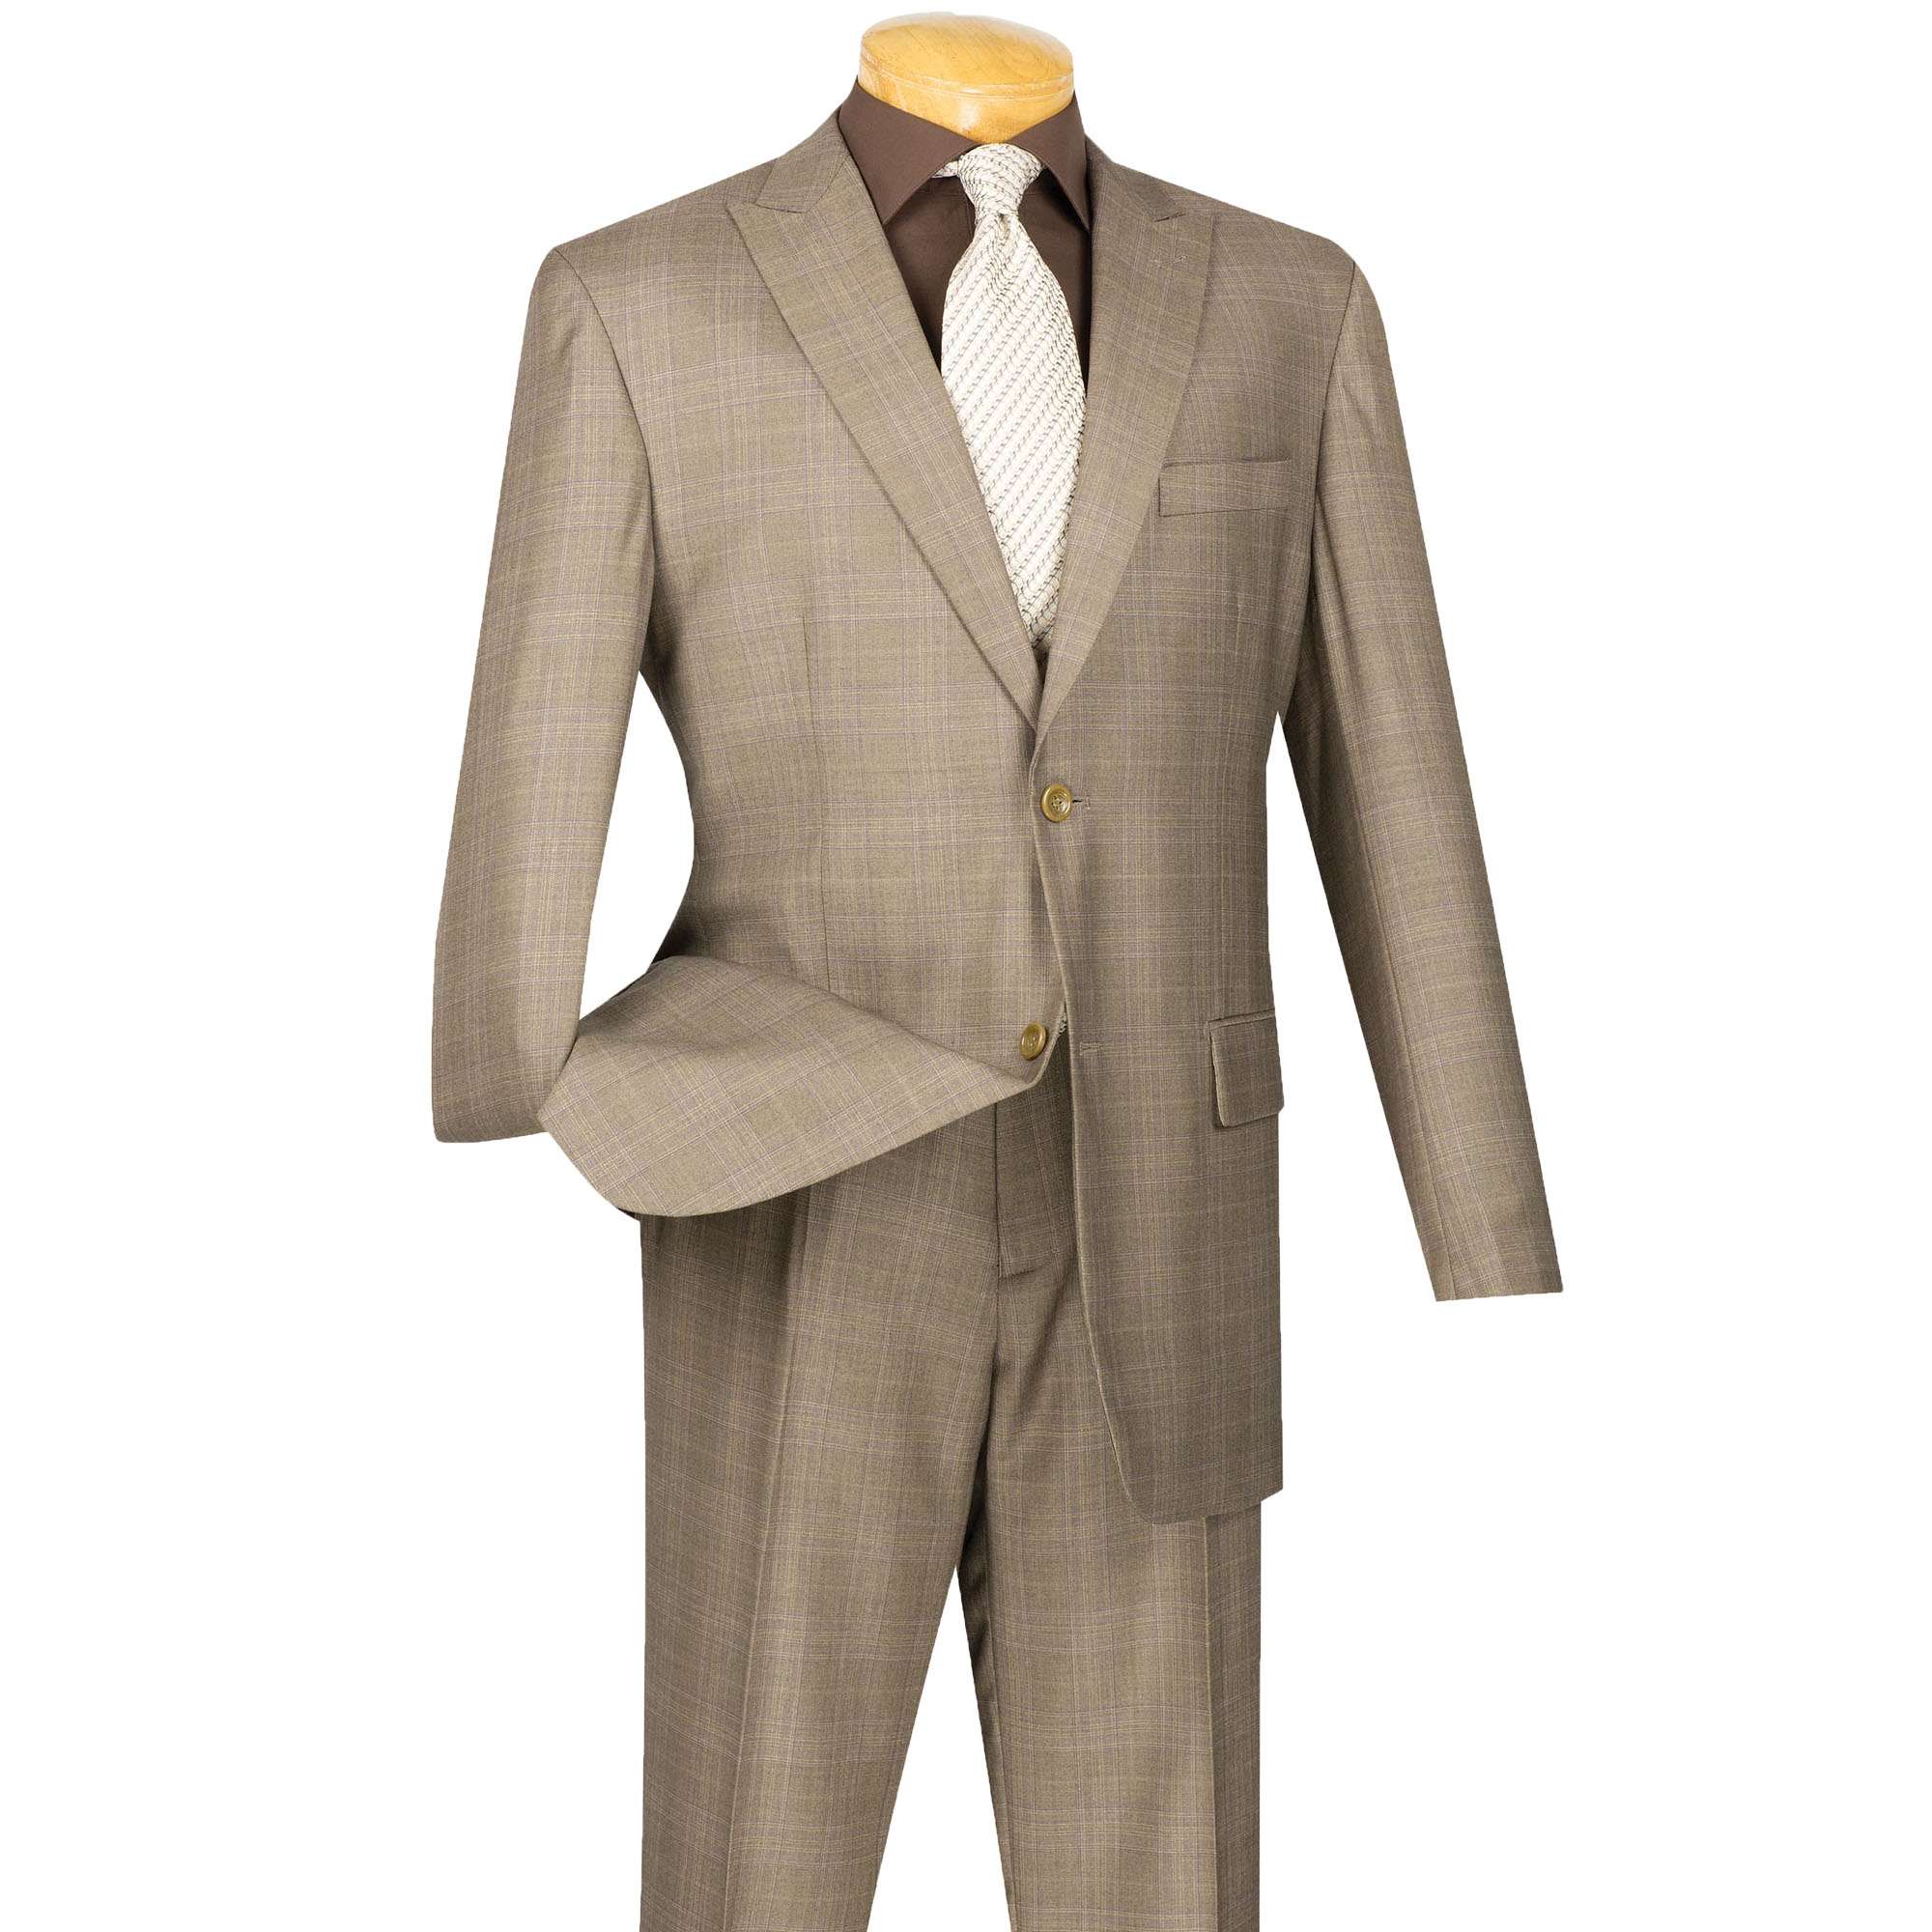 VINCI Men's Tan Glen Plaid 2 Button Classic Fit Suit w/ Peak Lapel NEW ...